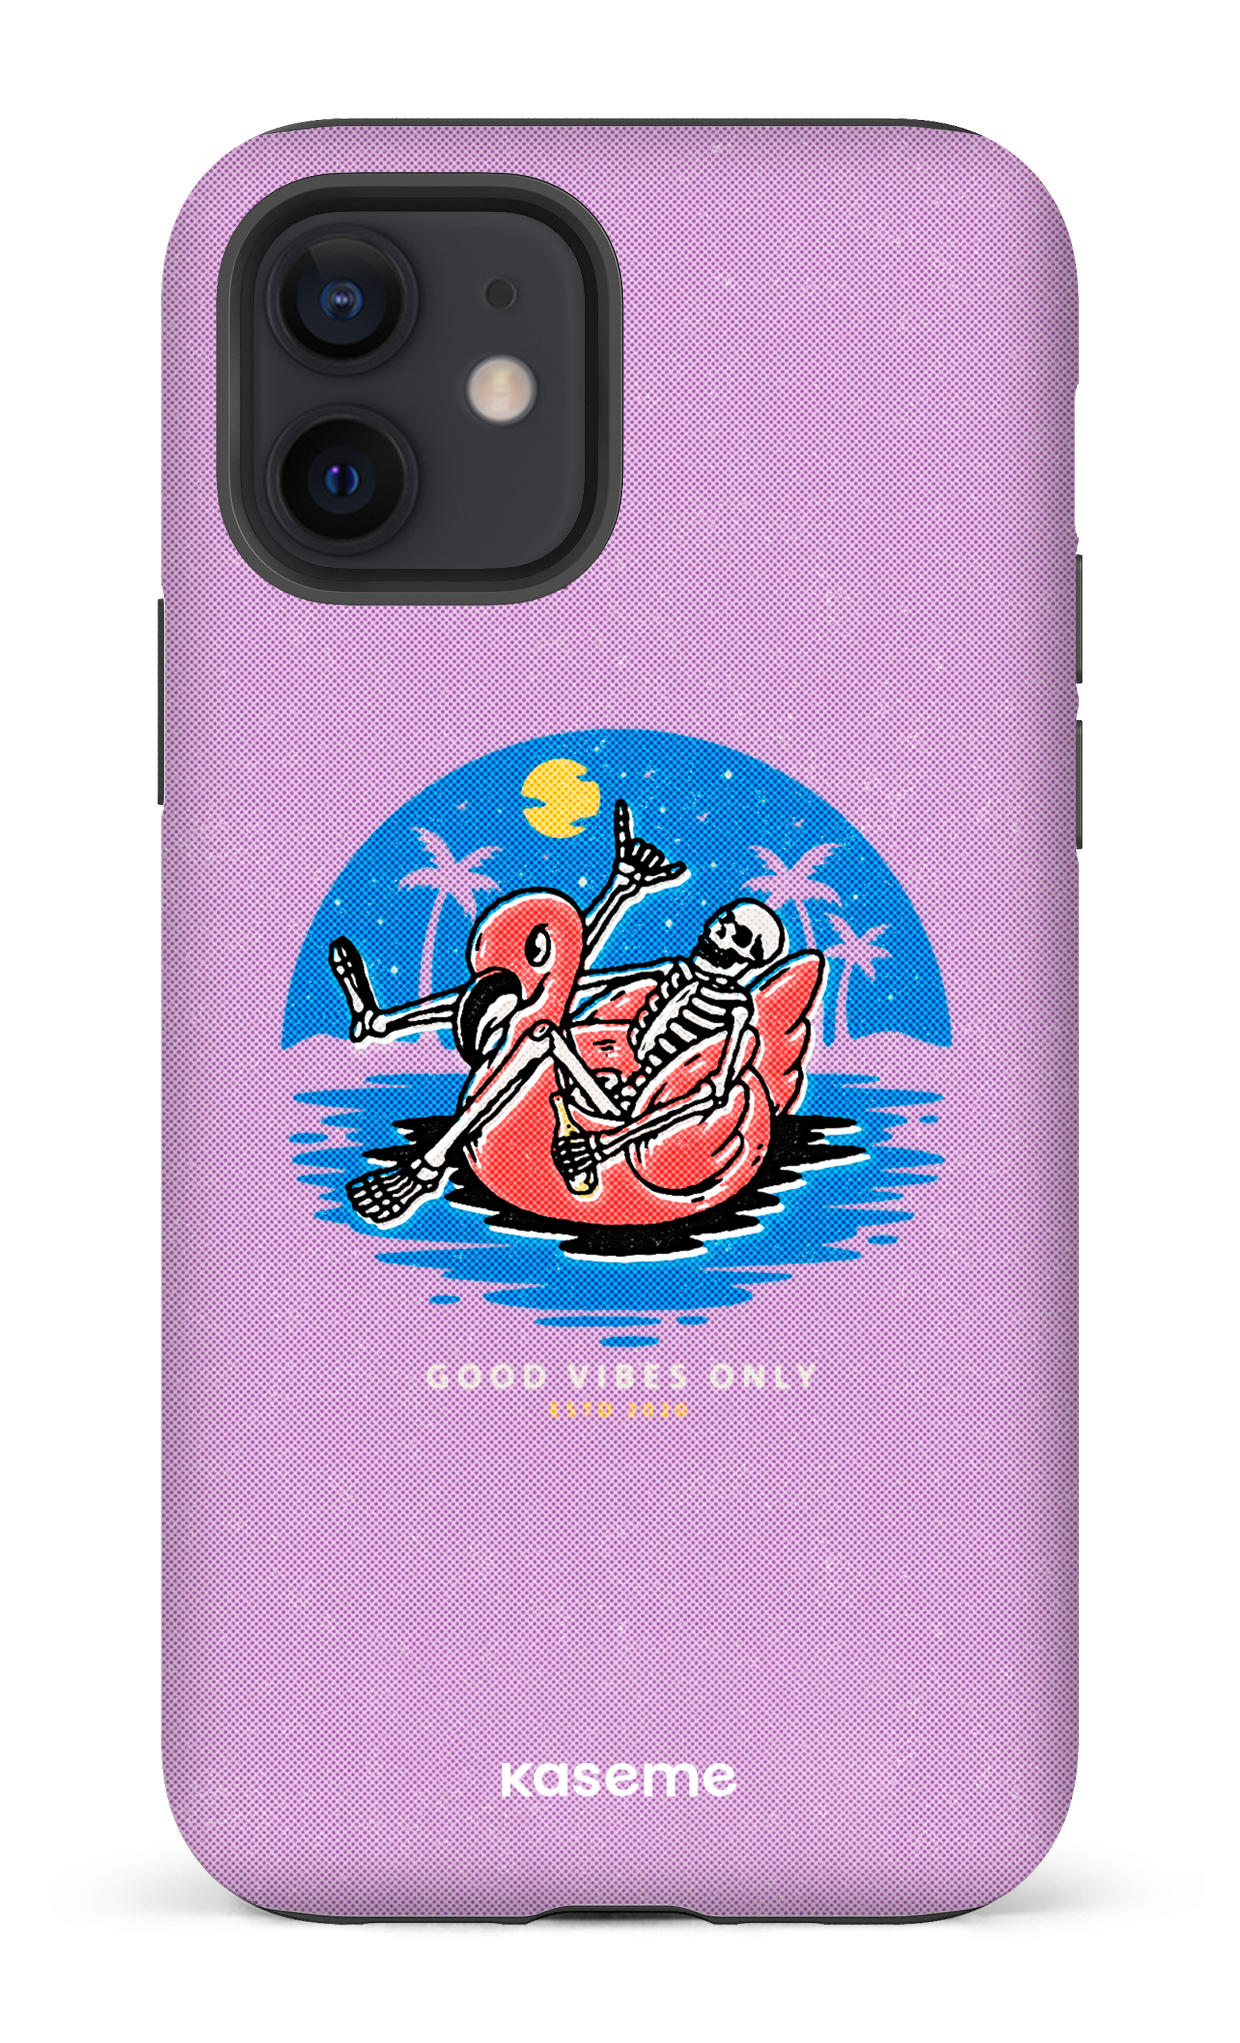 Seaside purple - iPhone 12